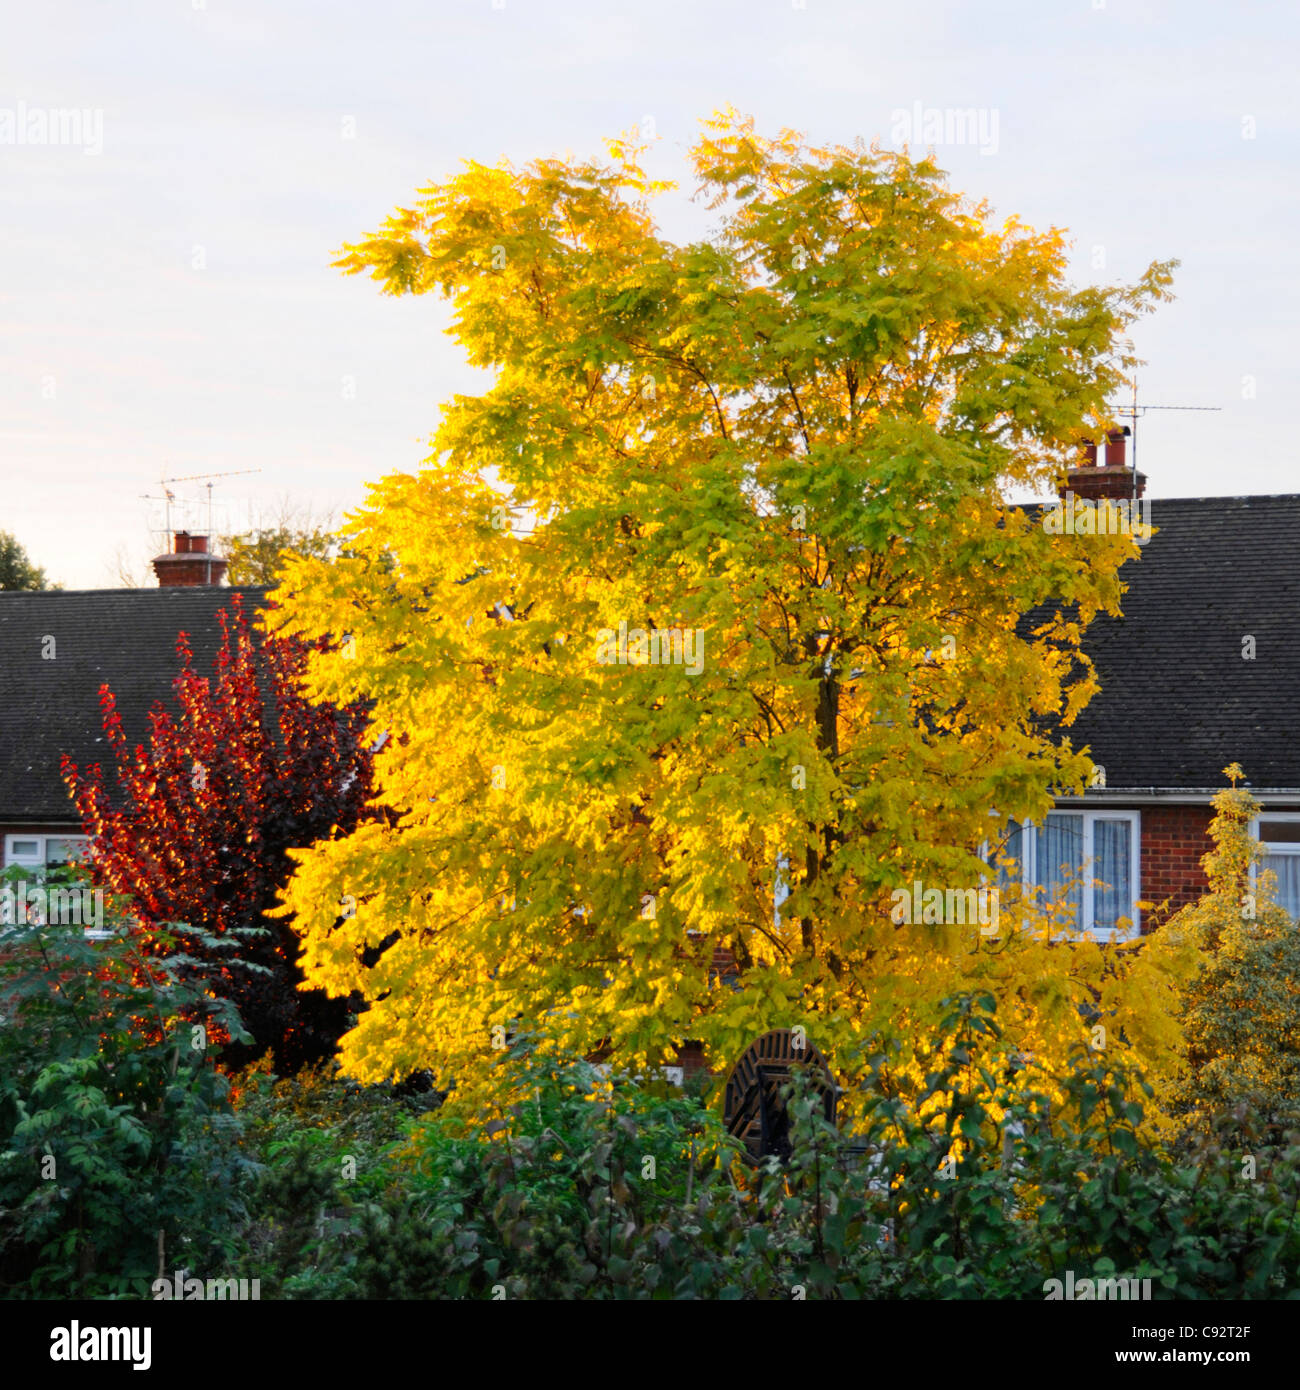 Robinia pseudoacacia amarillo dorado Frisia cultivar Plantado como árbol caducifolio ornamental en el jardín trasero, temprano en la mañana el sol Essex, Inglaterra Foto de stock